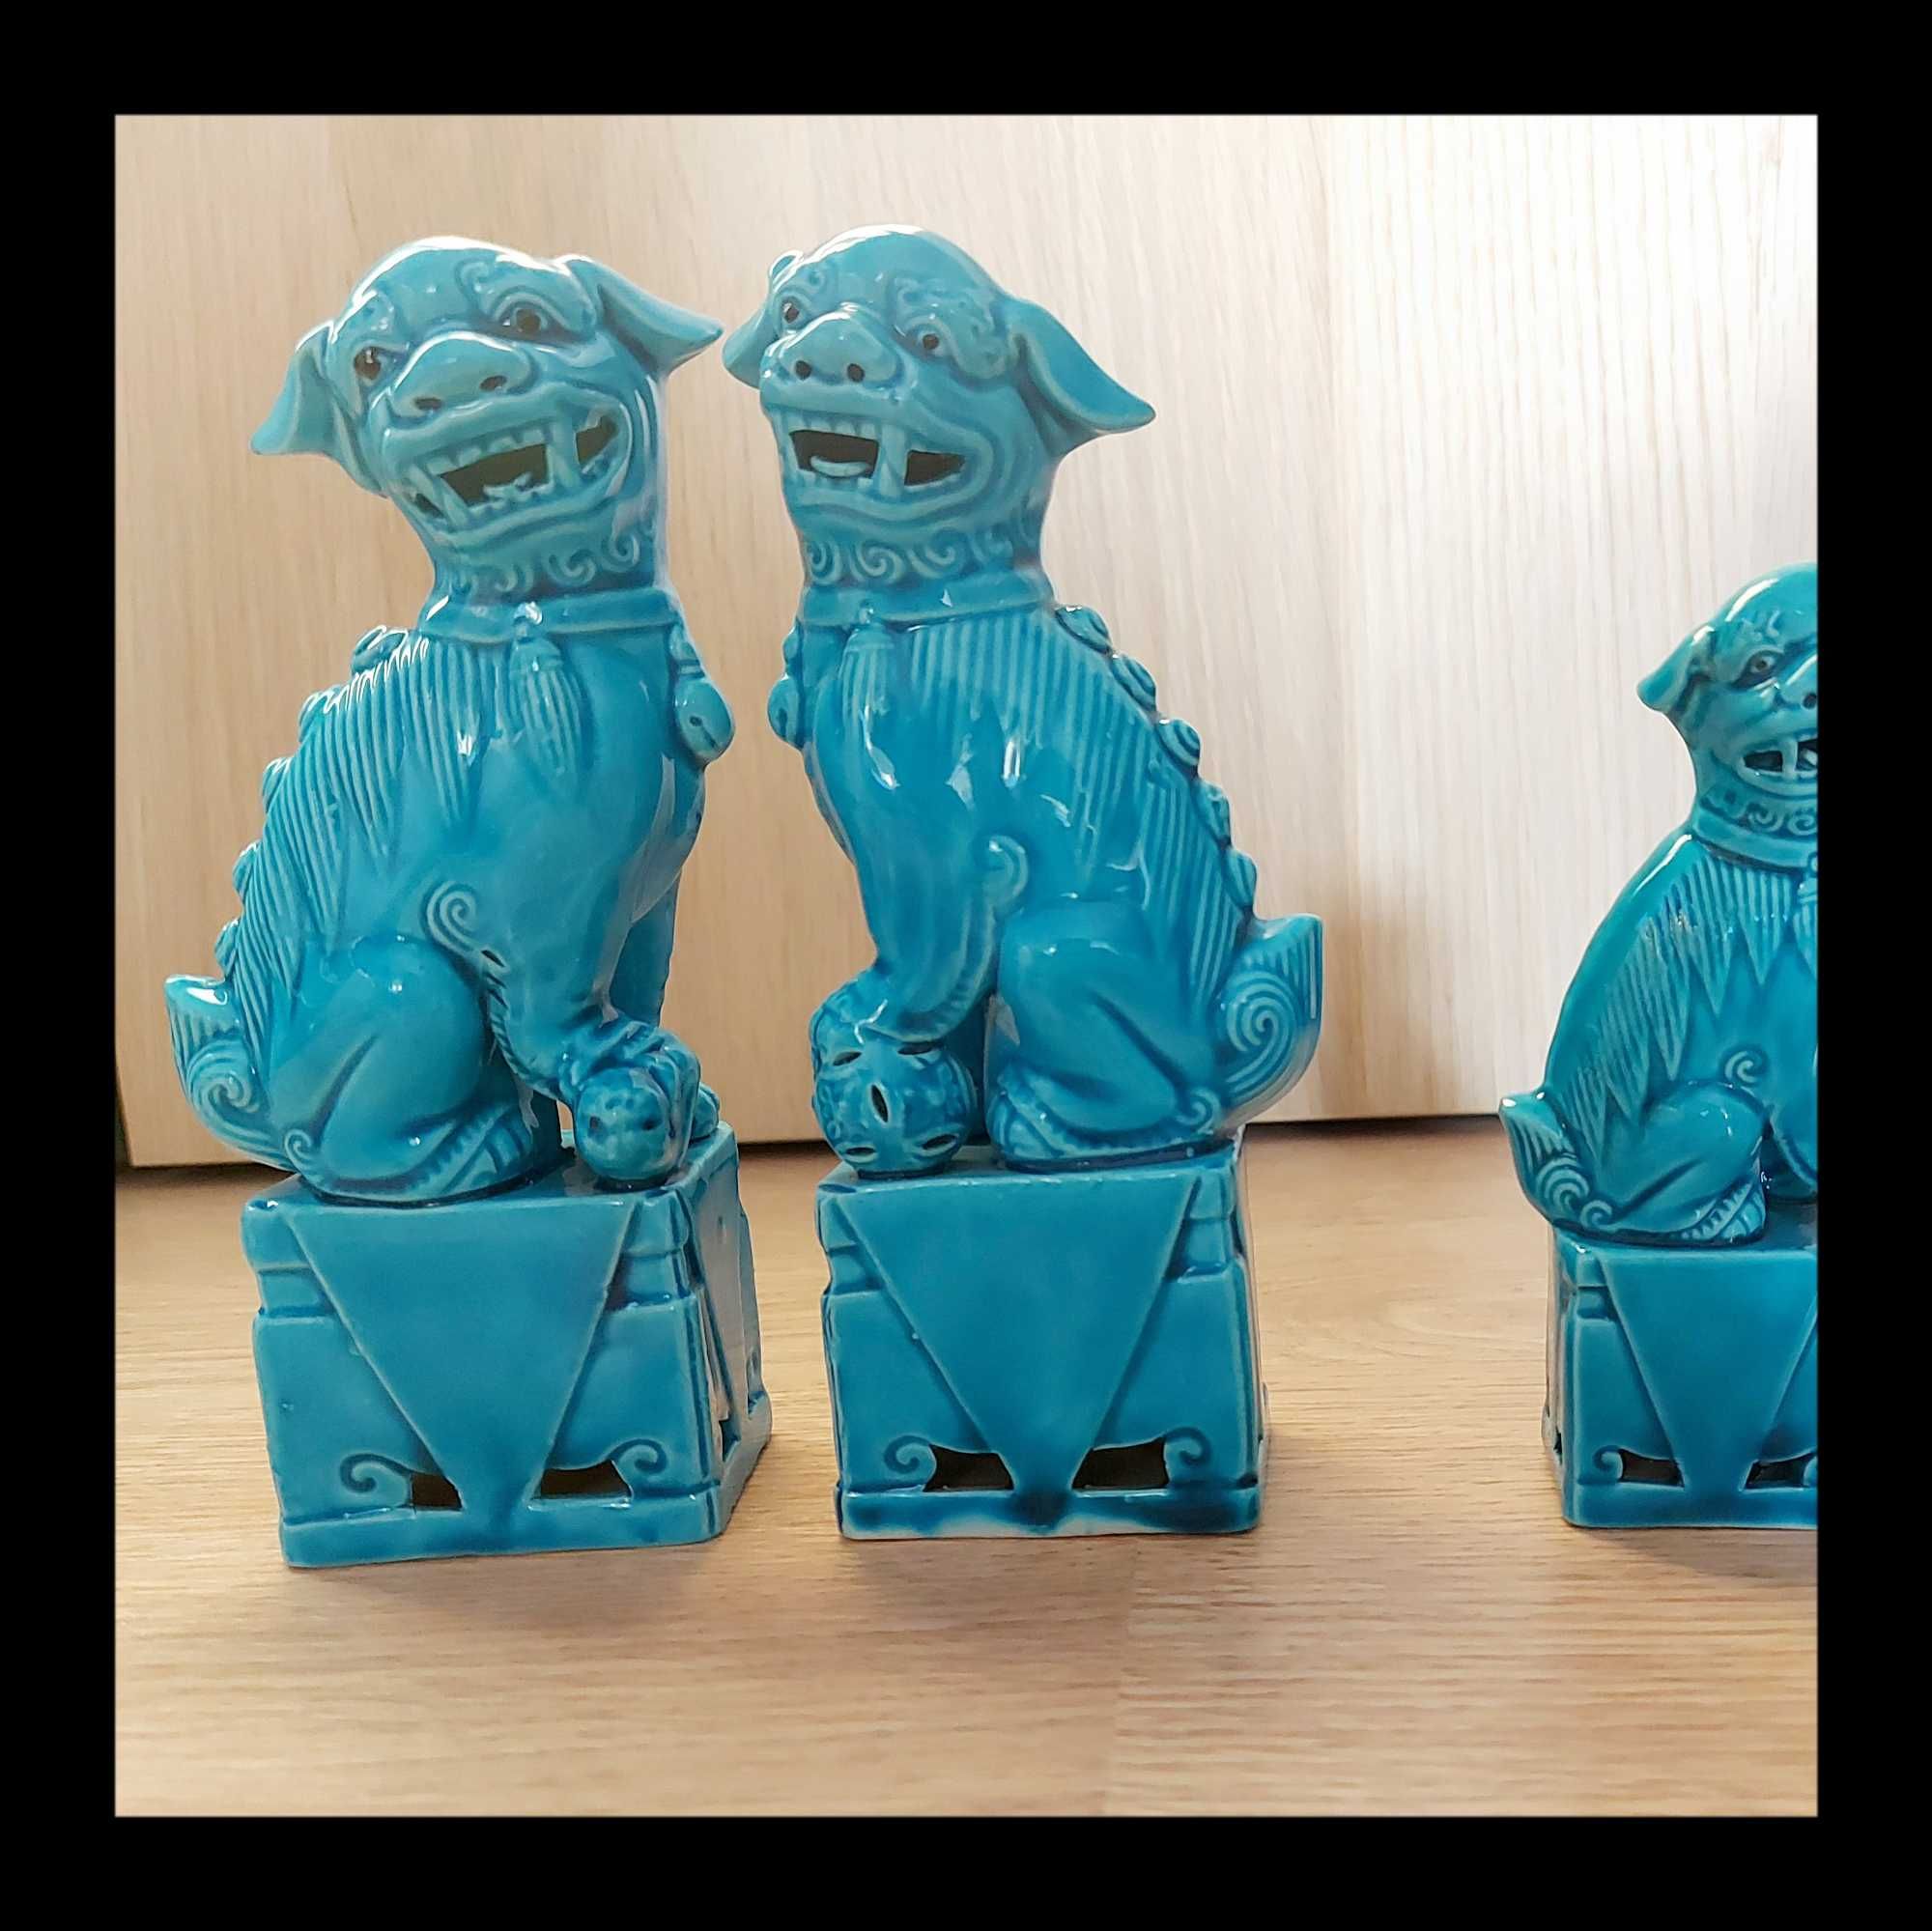 Pereche caini Fu din ceramica albastra, 15 cm inaltime